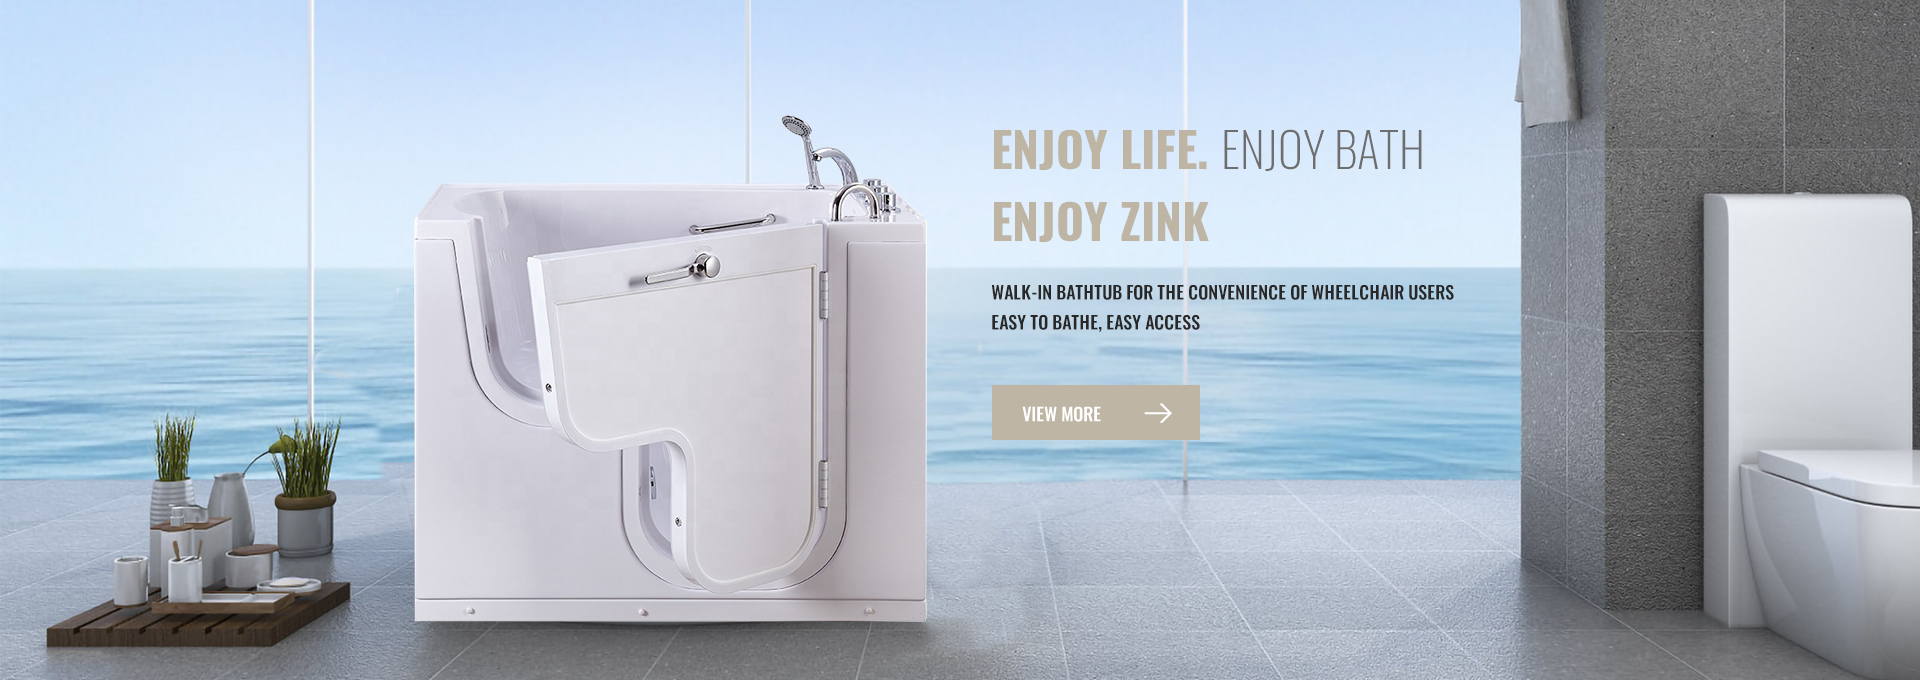 قابل اعتماد و نوآورانه: Foshan Zink Sanitary Ware Co., Ltd. - شریک مورد اعتماد شما برای وان حمام با کیفیت بالا و موارد دیگر